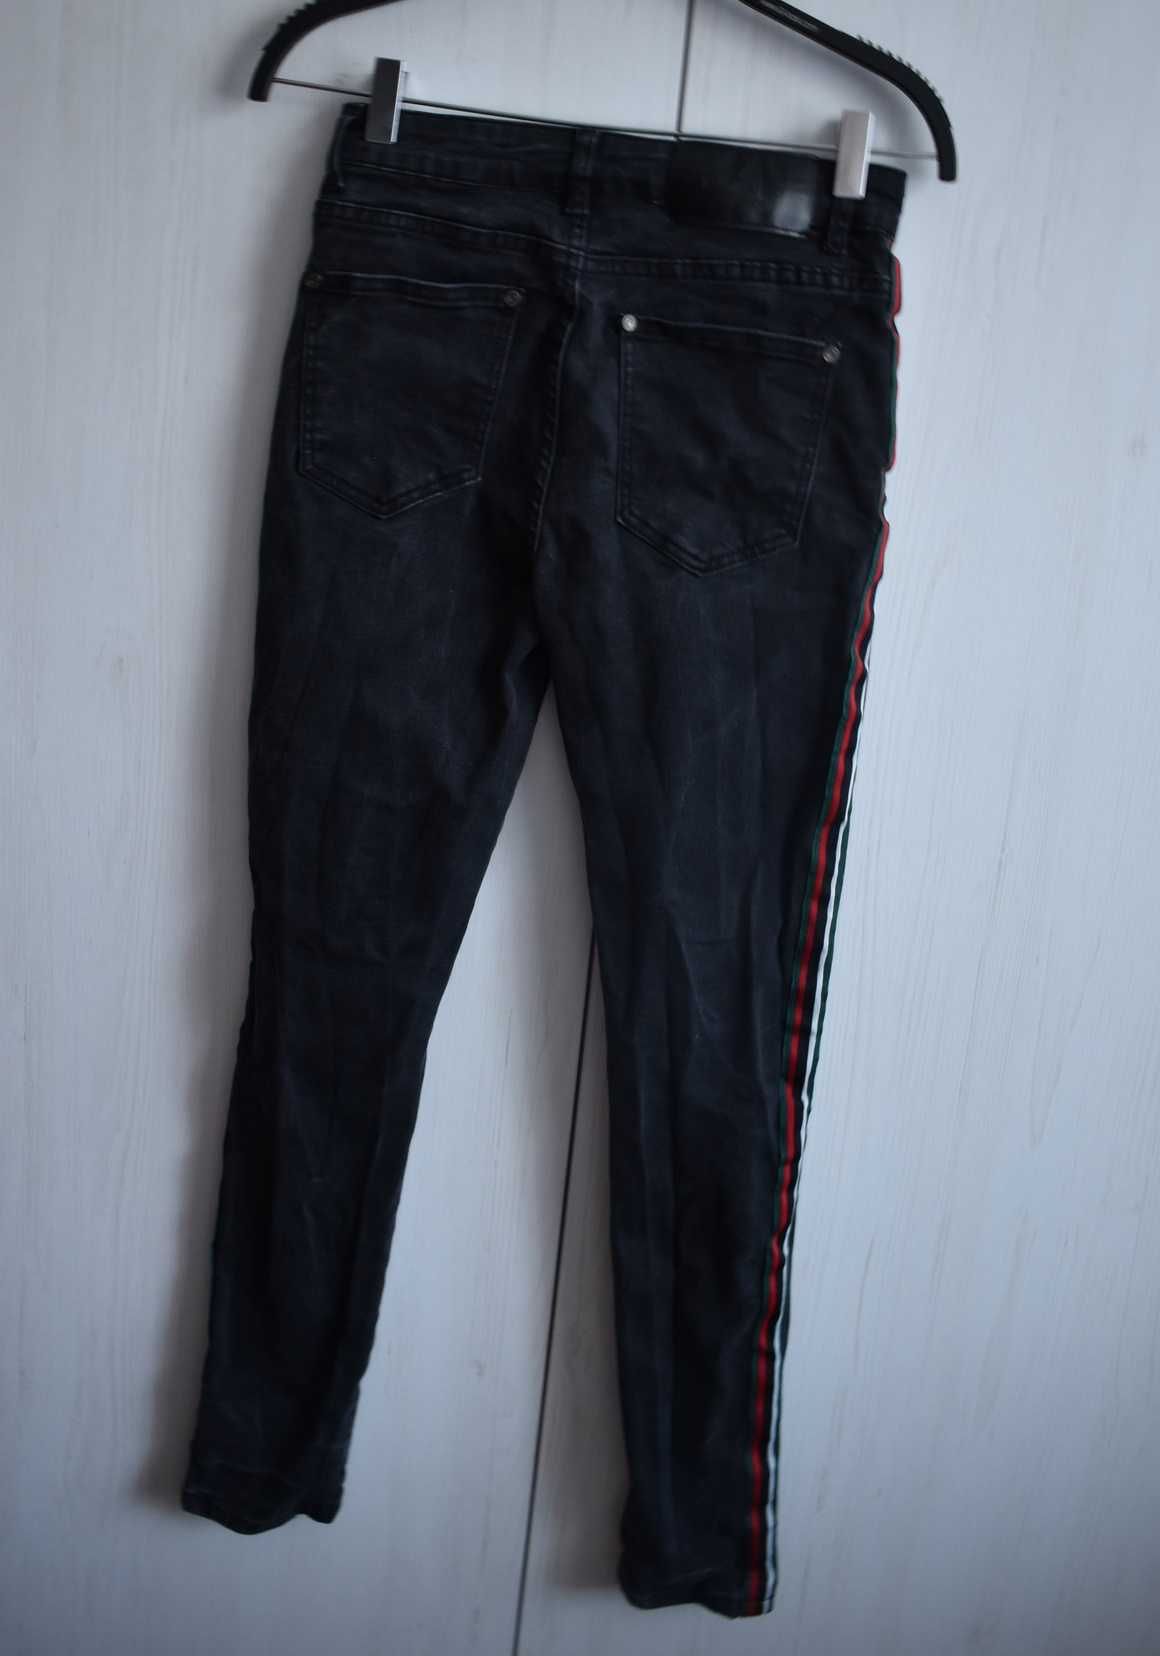 Spodnie dżinsowe XS lampasy jeans rurki dziury S męskie dopasowane